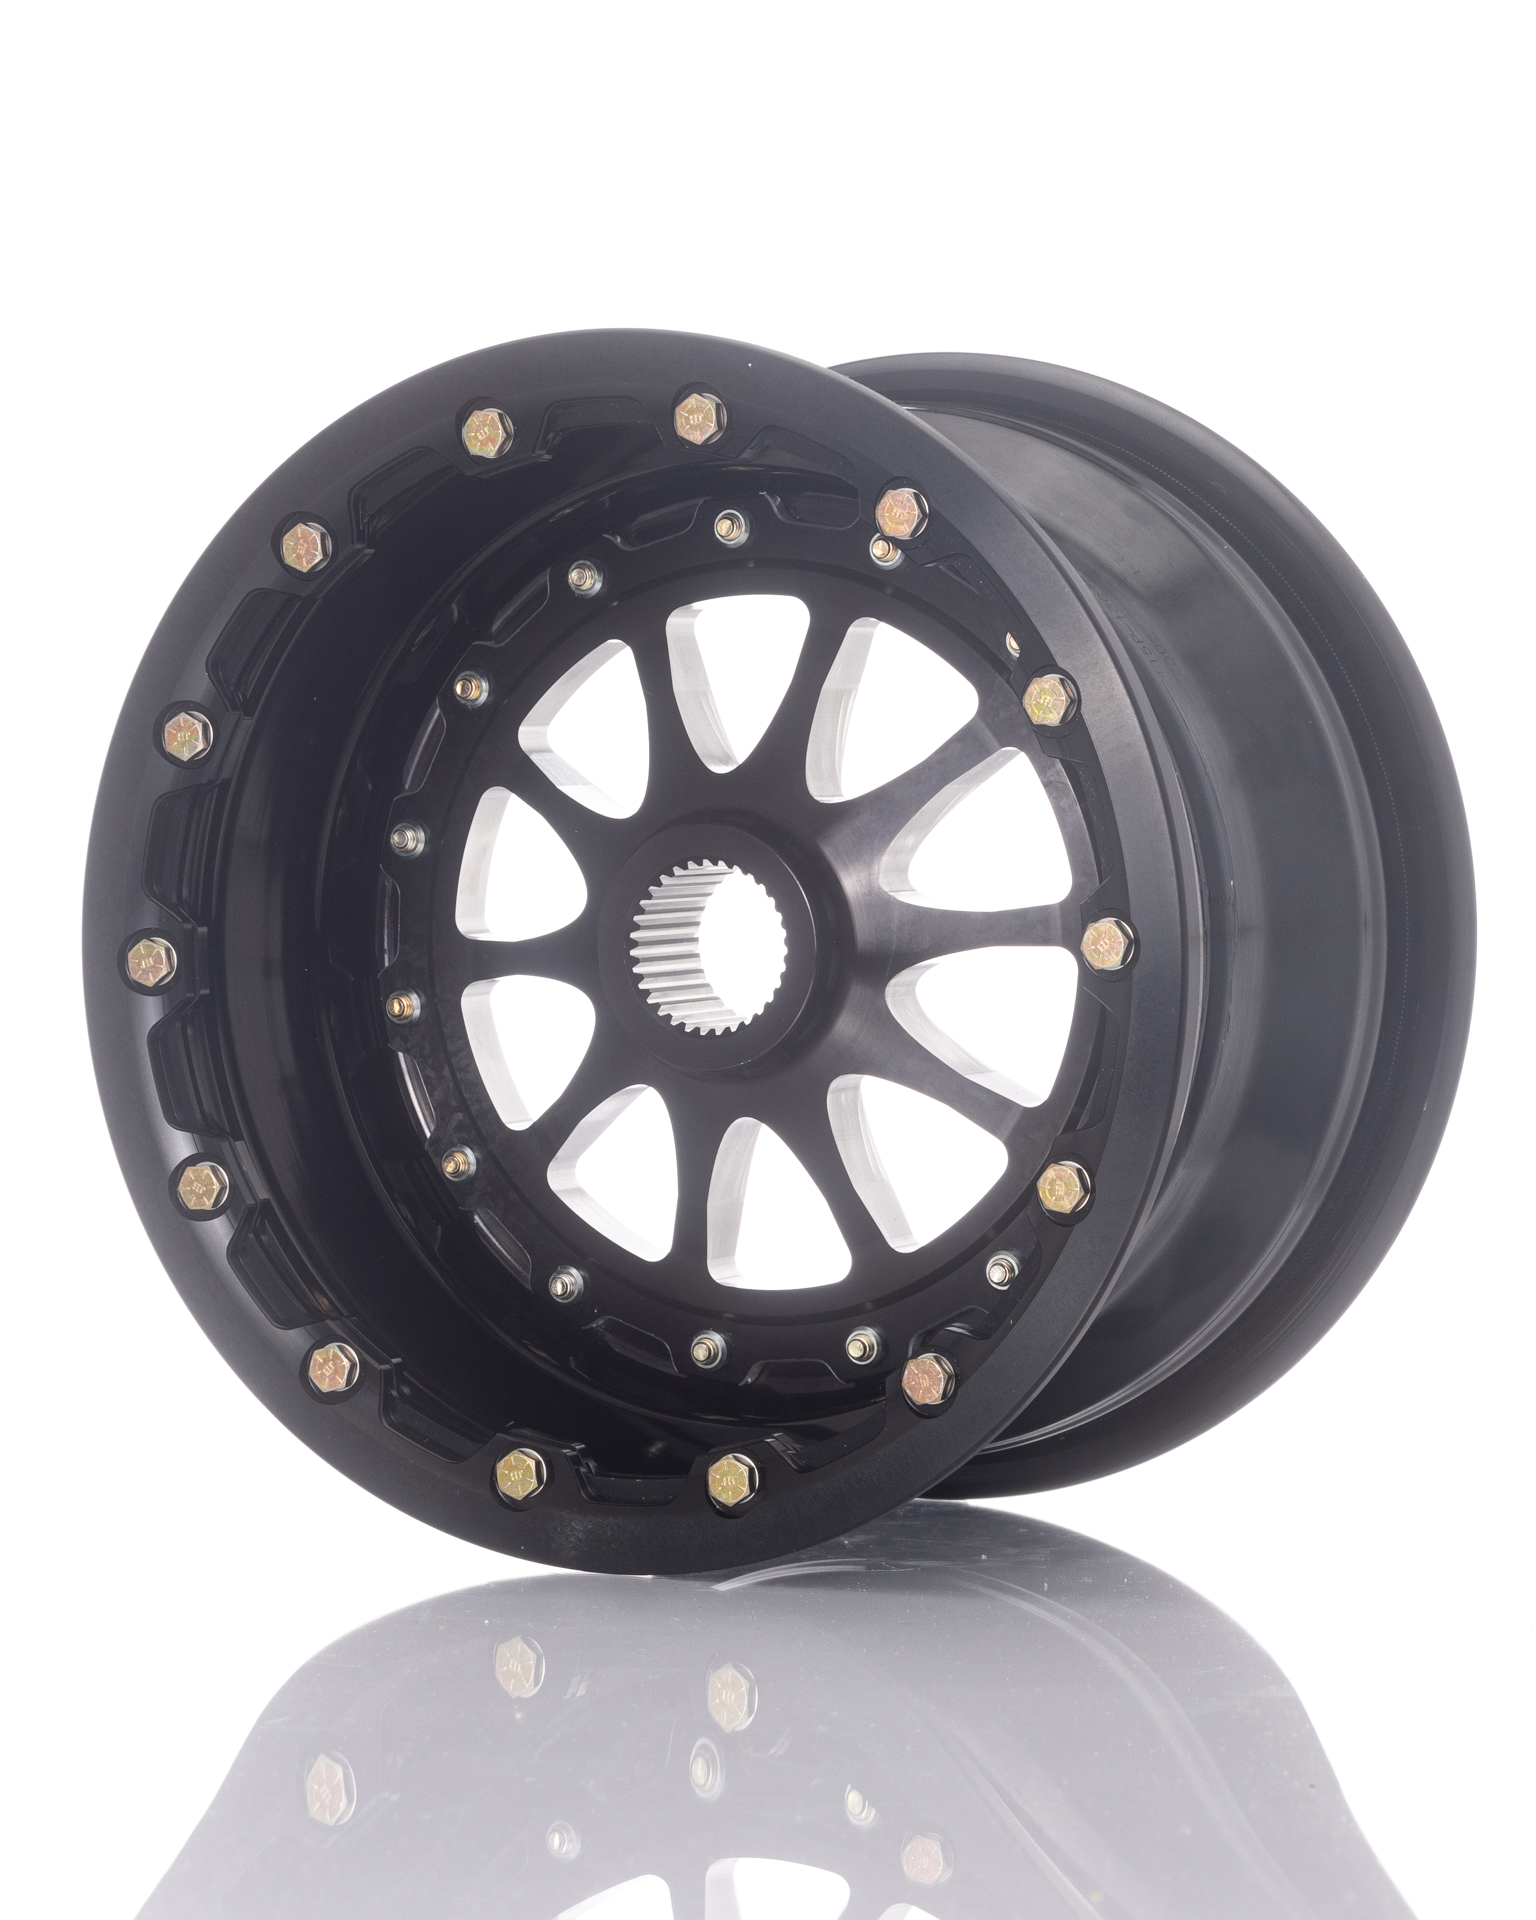 <a href="https://www.vahlco.com/midget-aluminum-racing-wheels/">13″ Midget Wheels</a>